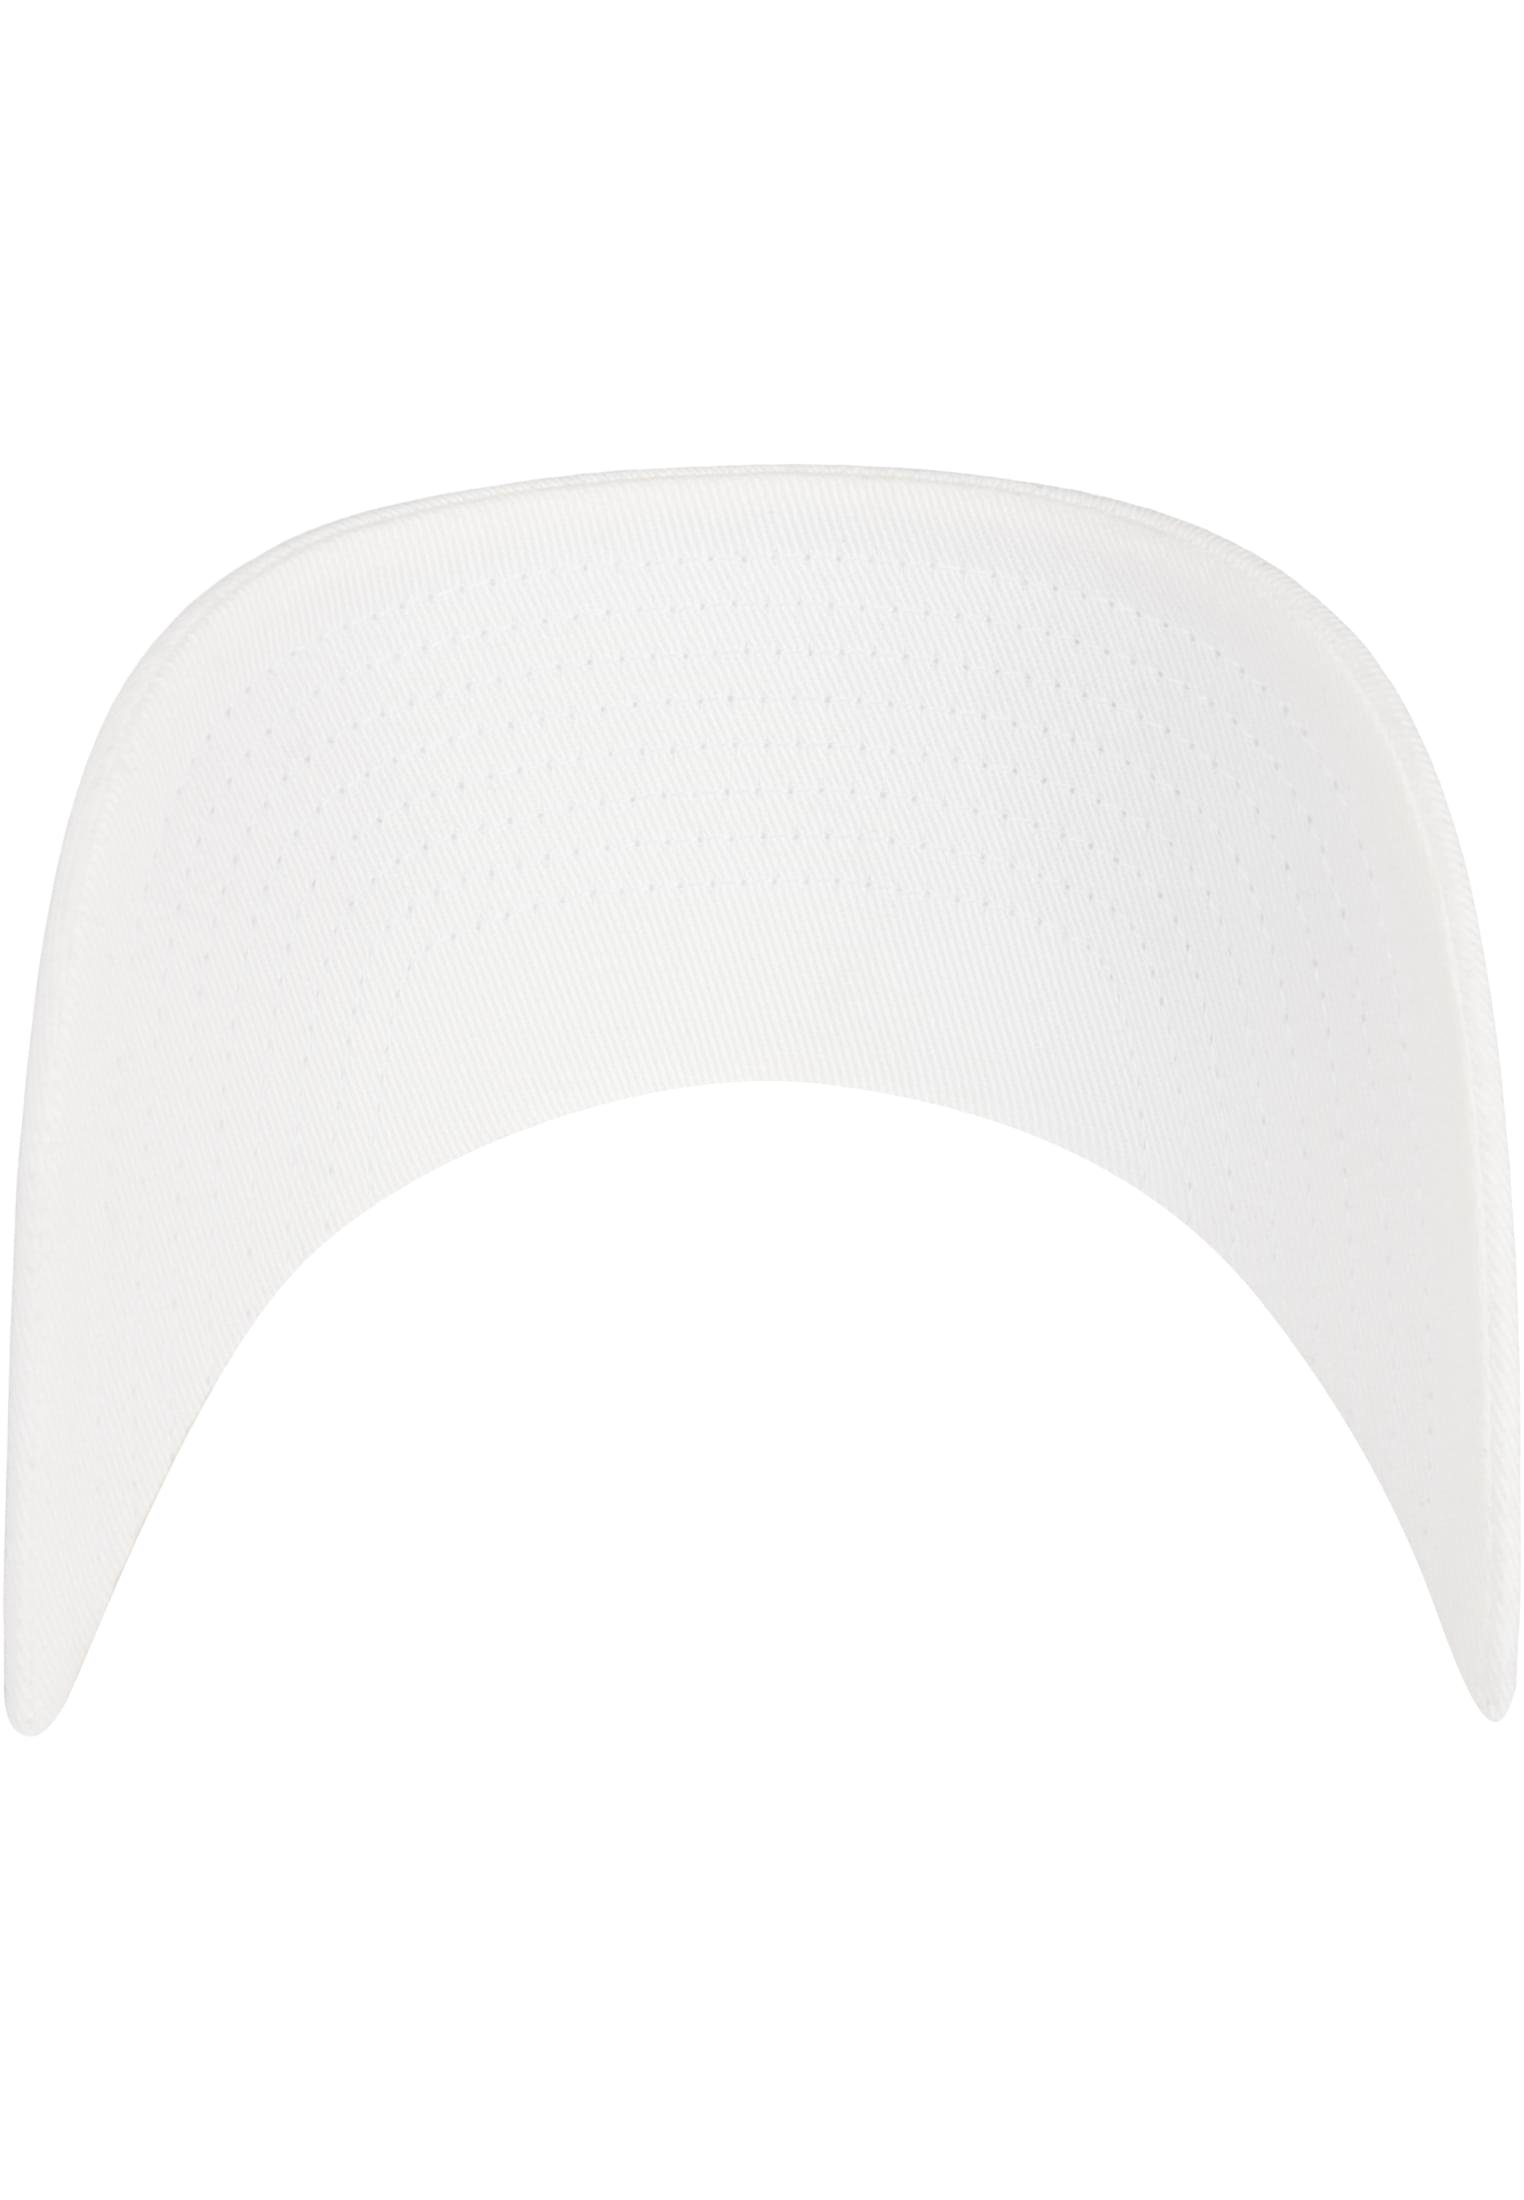 Flexfit Flex Cap Cap 110 Flexfit white Accessoires Organic